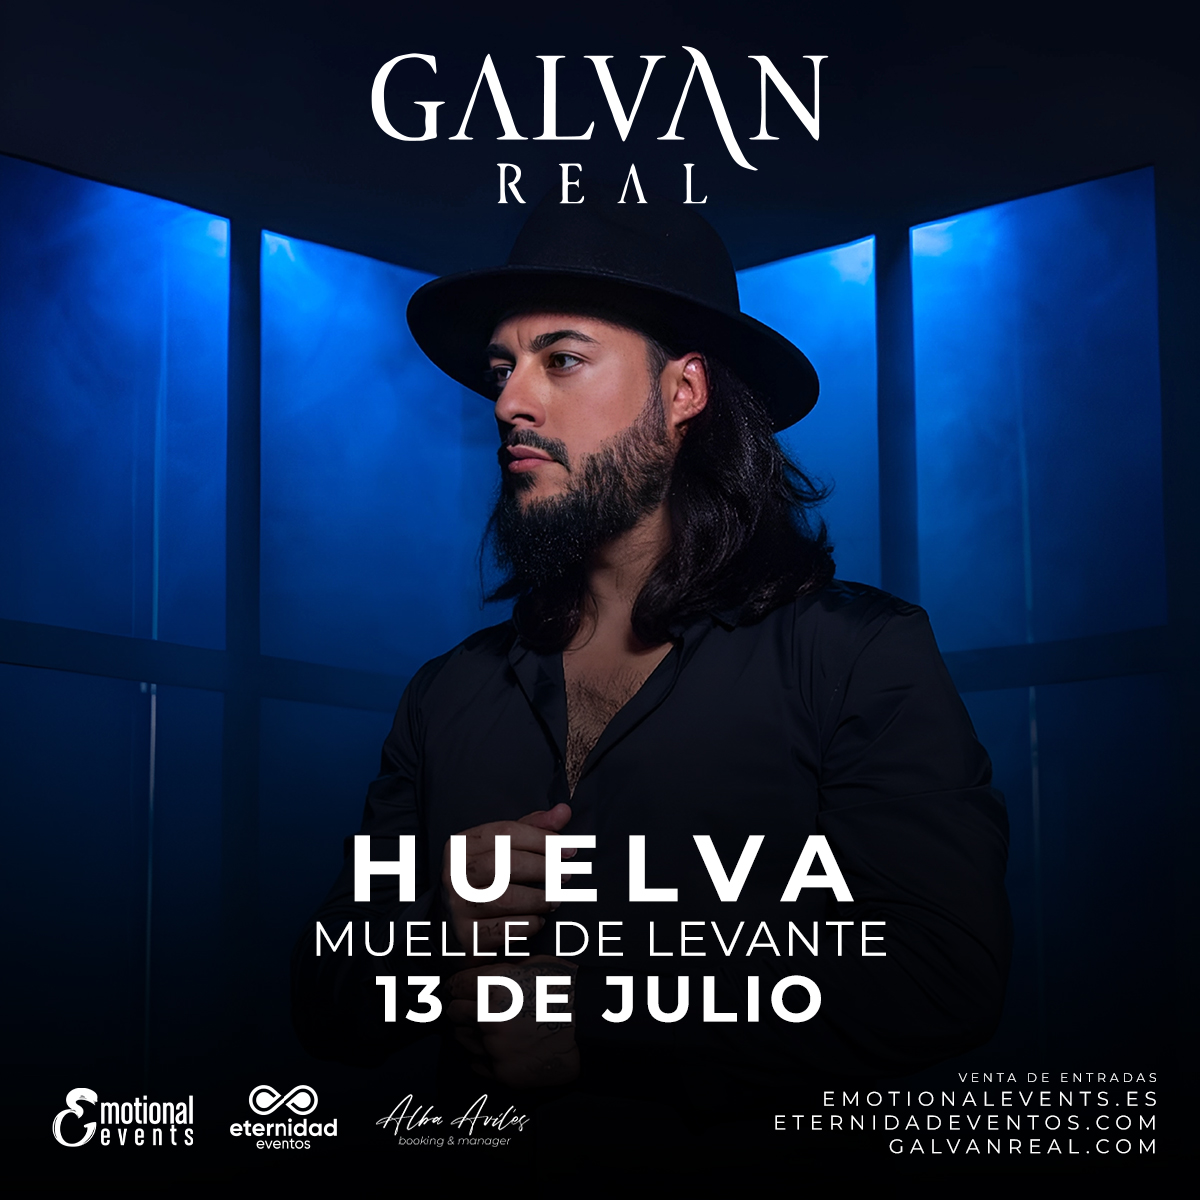 ¡Este 13 de julio tenemos una cita con Galván Real!💙 Huelva, esperamos que estéis preparados para lo que se viene...va a ser algo increíble, os lo prometemos😍 Entradas ya disponibles en nuestra bio🎟️ #galvanreal #huelva #muelledelevante #emotionalevents